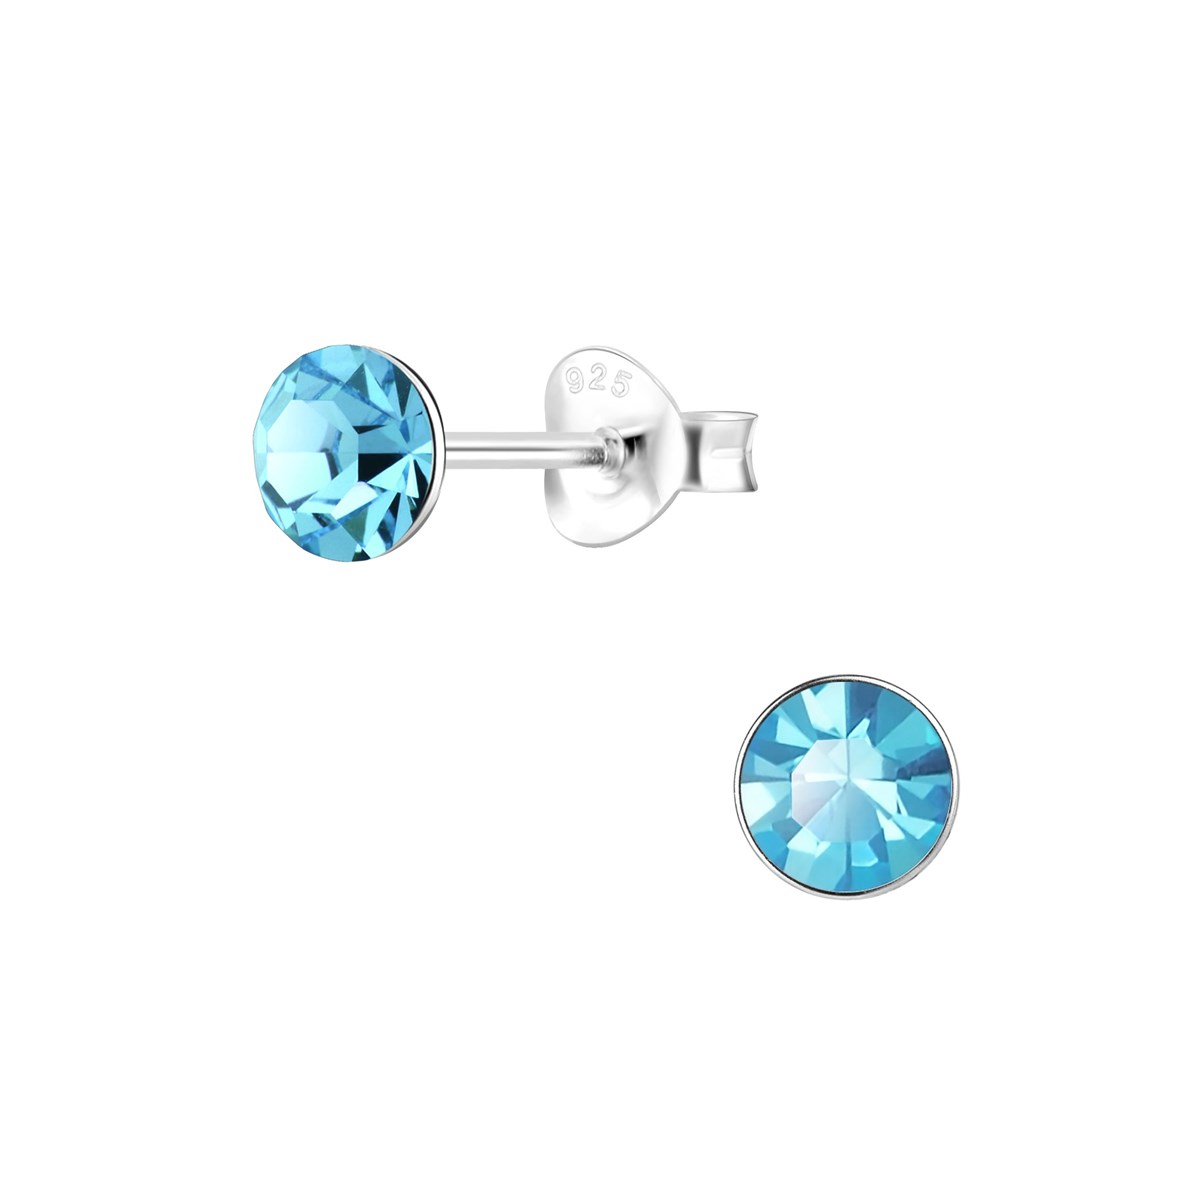 Boucles d'oreilles cristal bleu clair 5mm en argent 925